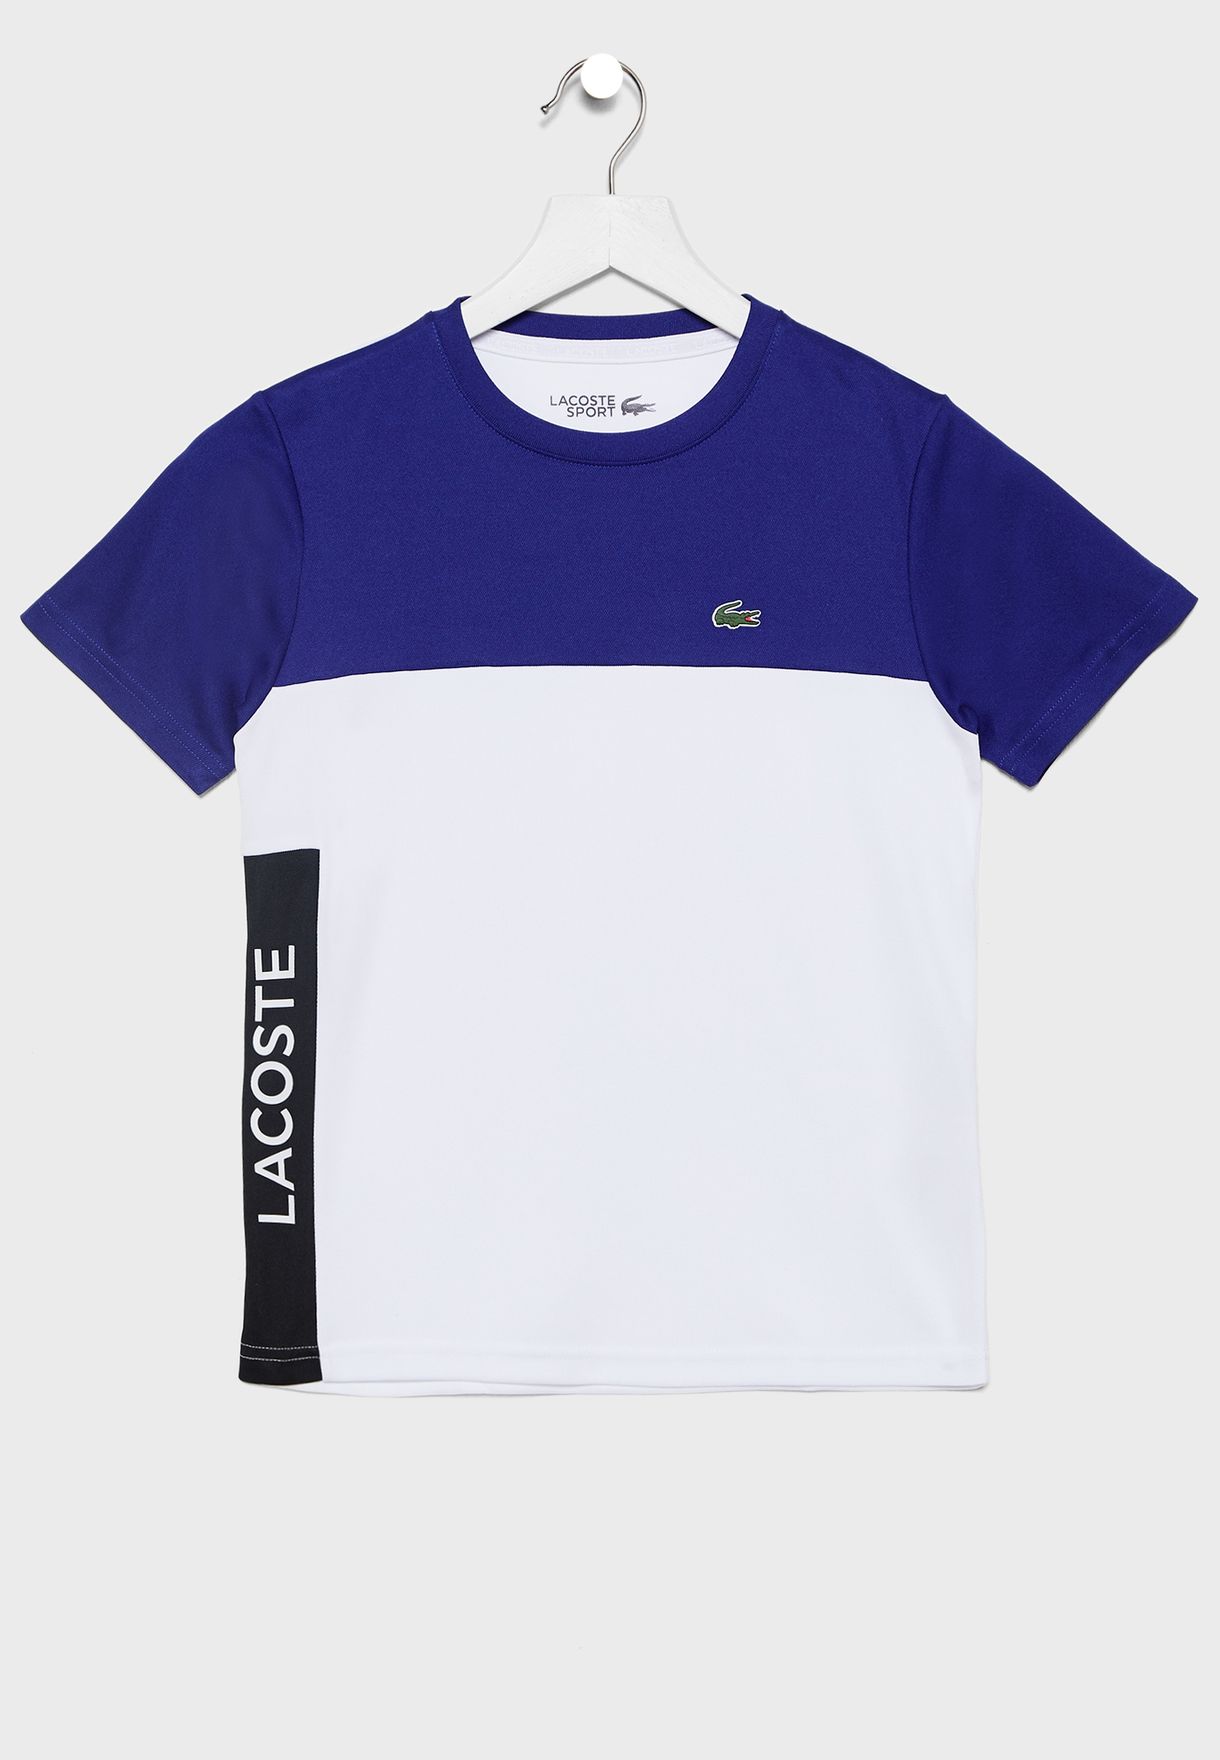 lacoste colour block t shirt